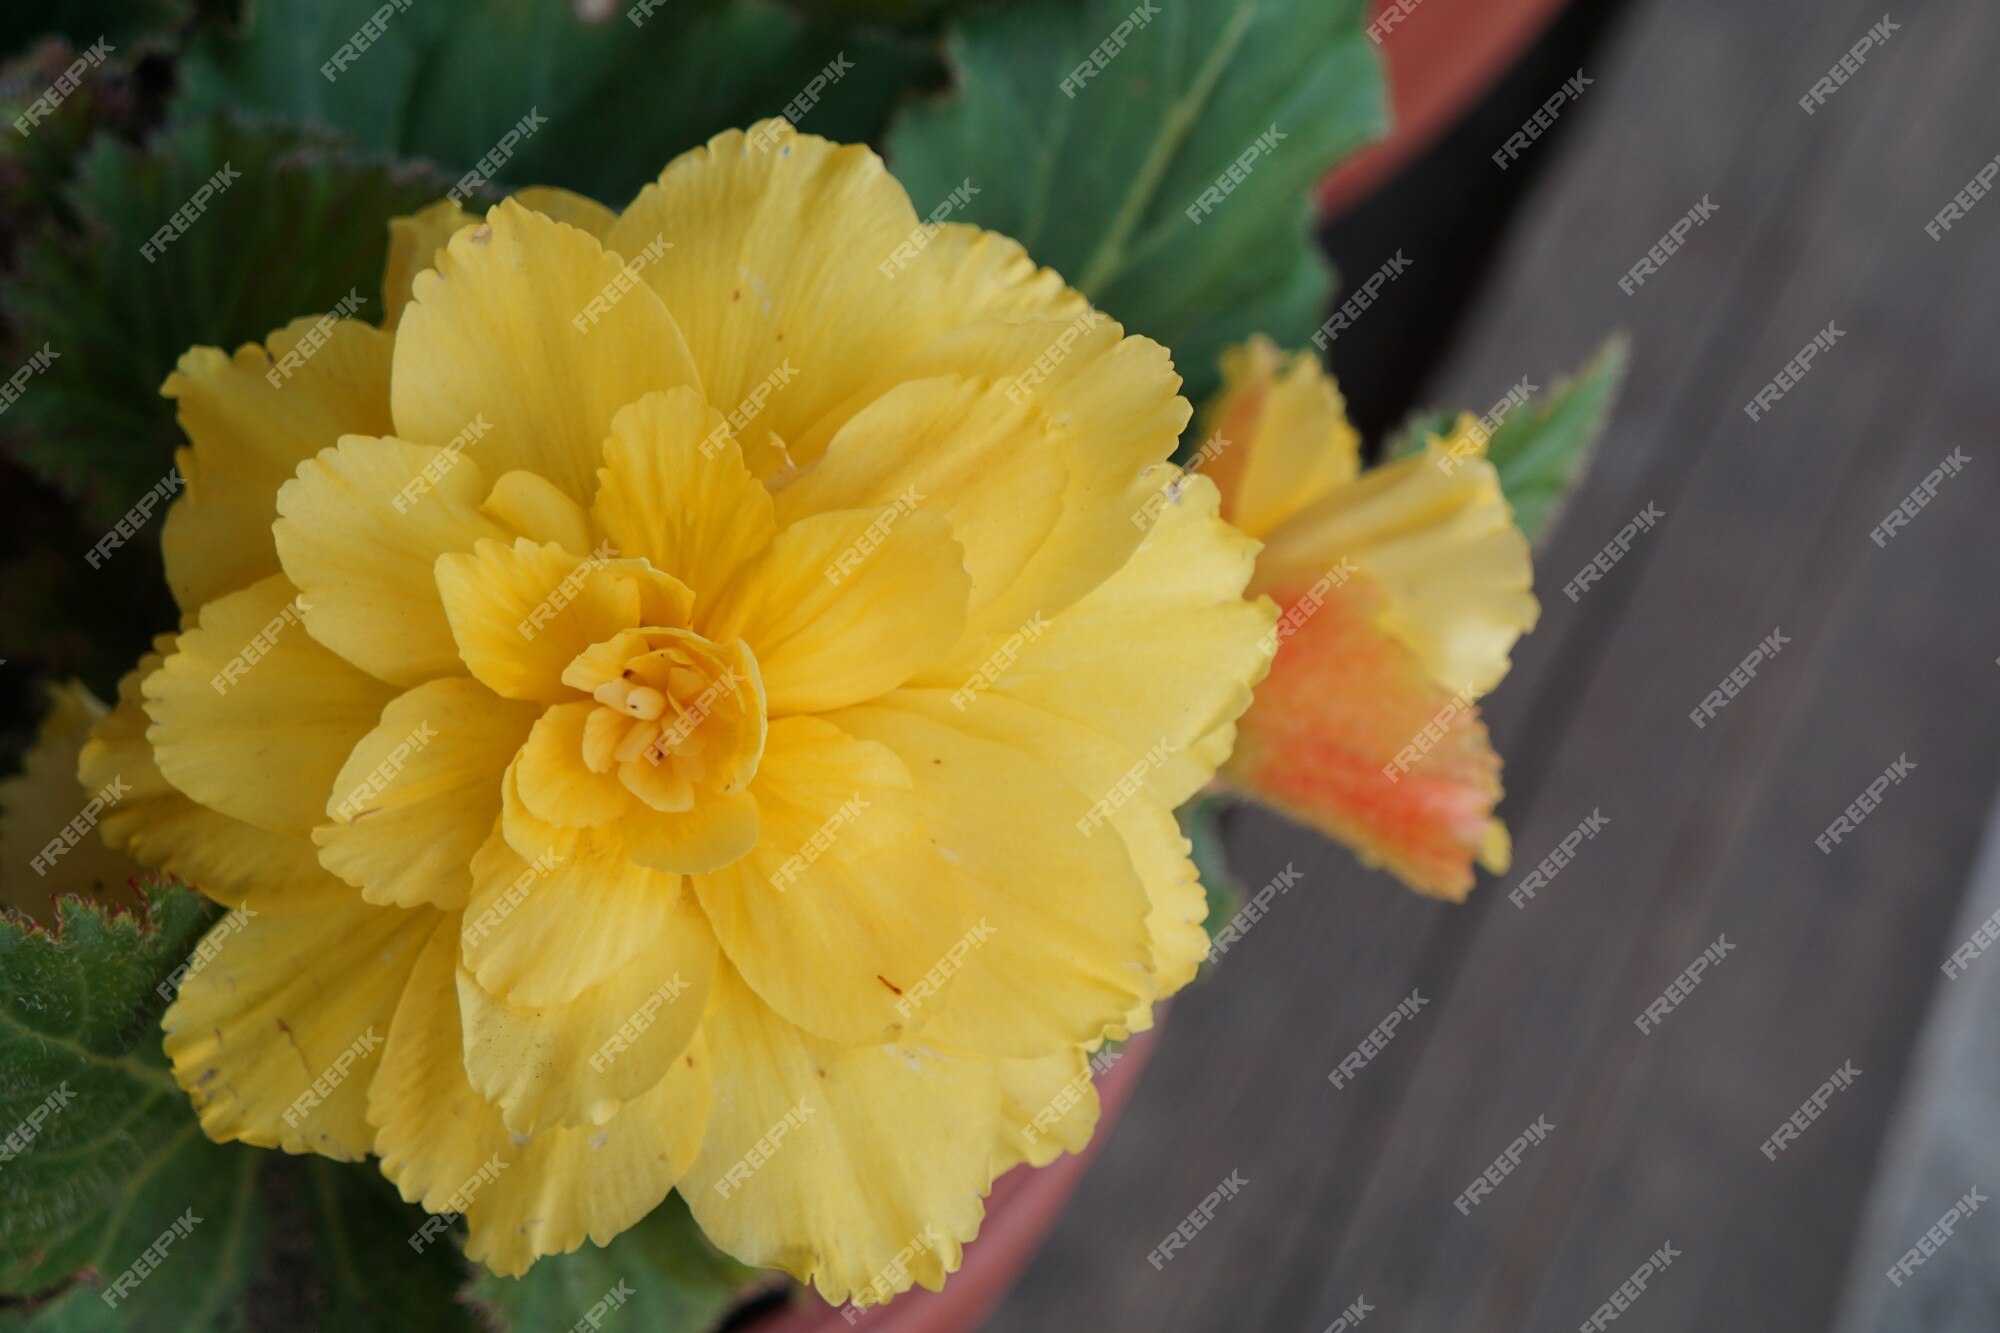 Planta da begônia com flor amarela no vaso | Foto Premium